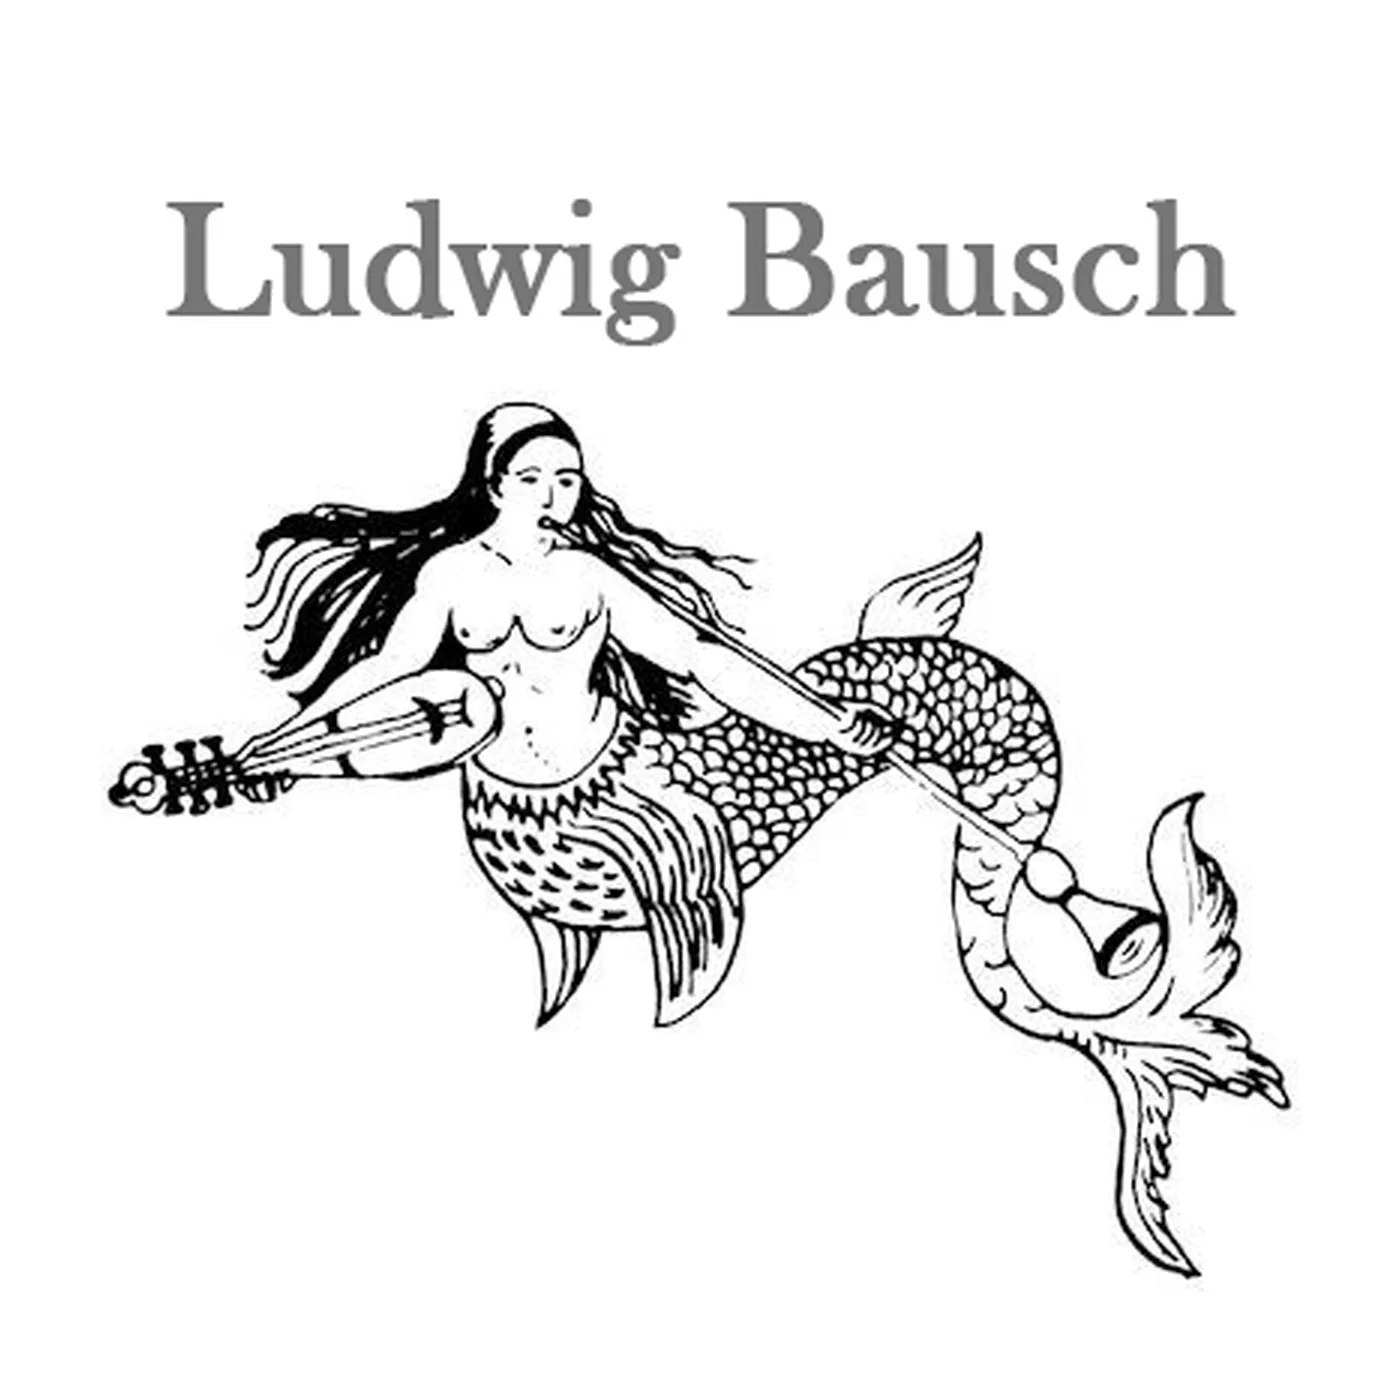 Bausch Ludwig